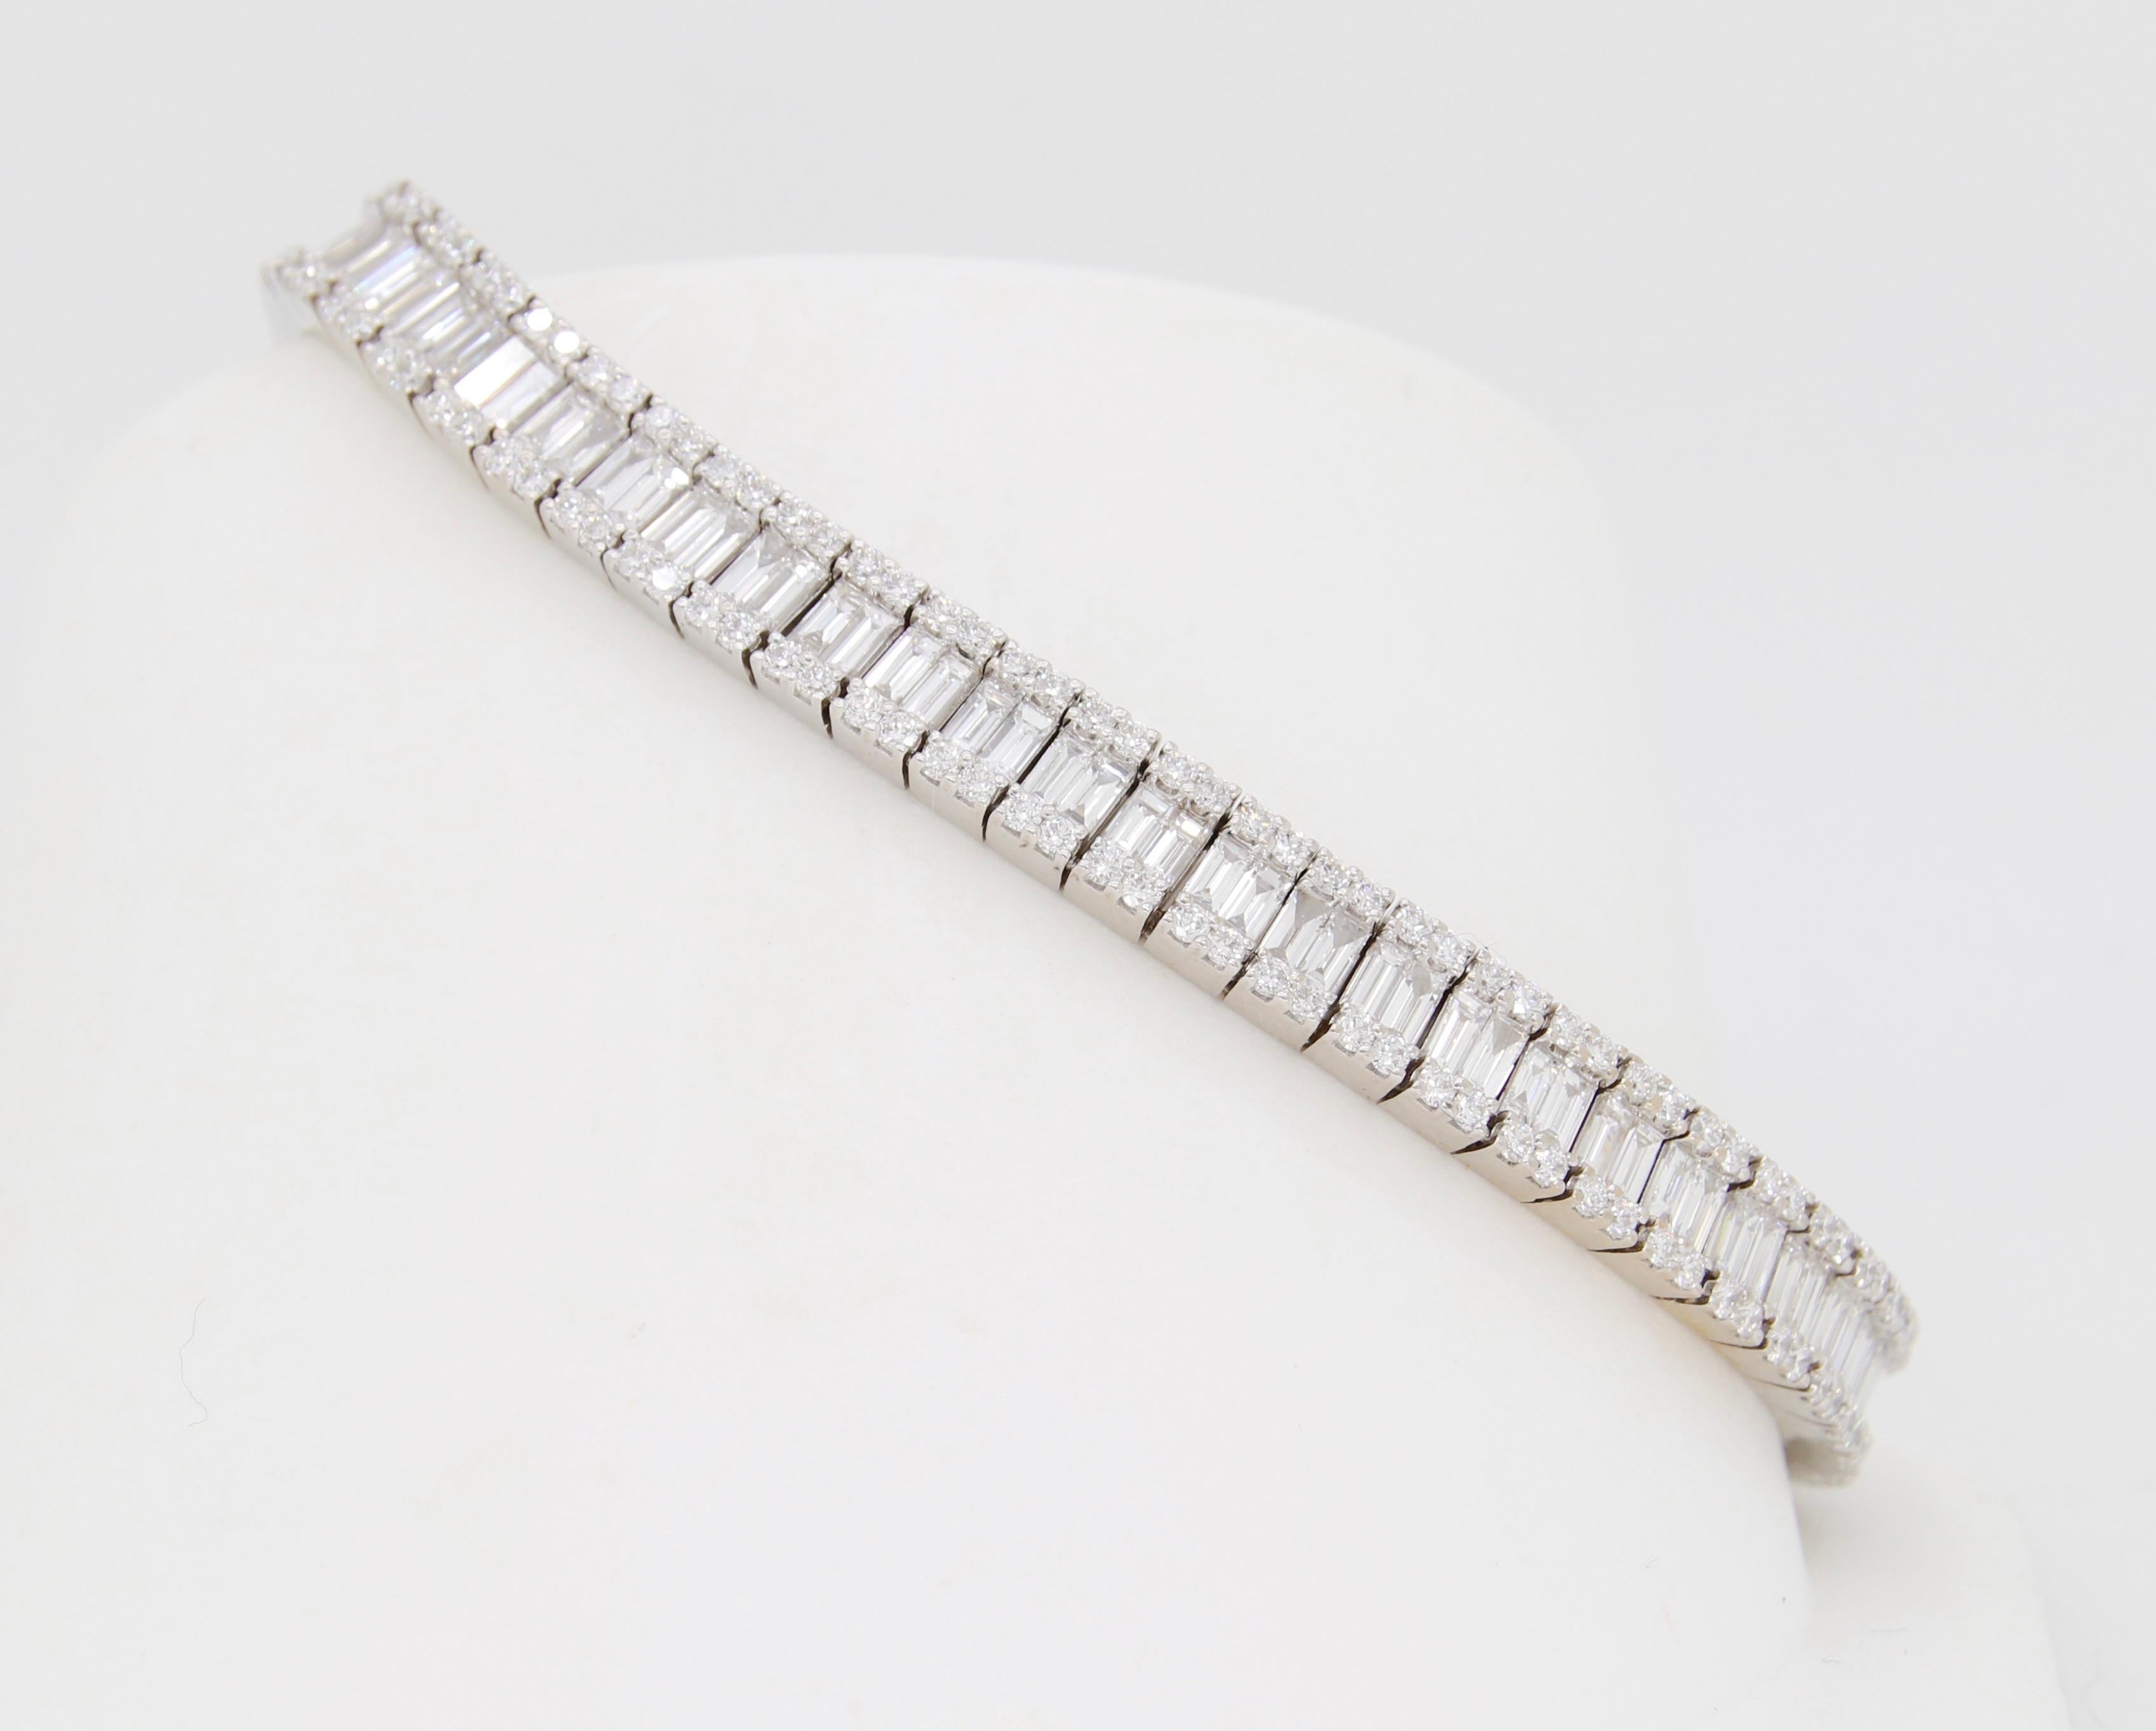 Stunning 7.44CTW Baguette & Round Diamond Bracelet in 18k White Gold For Sale 2